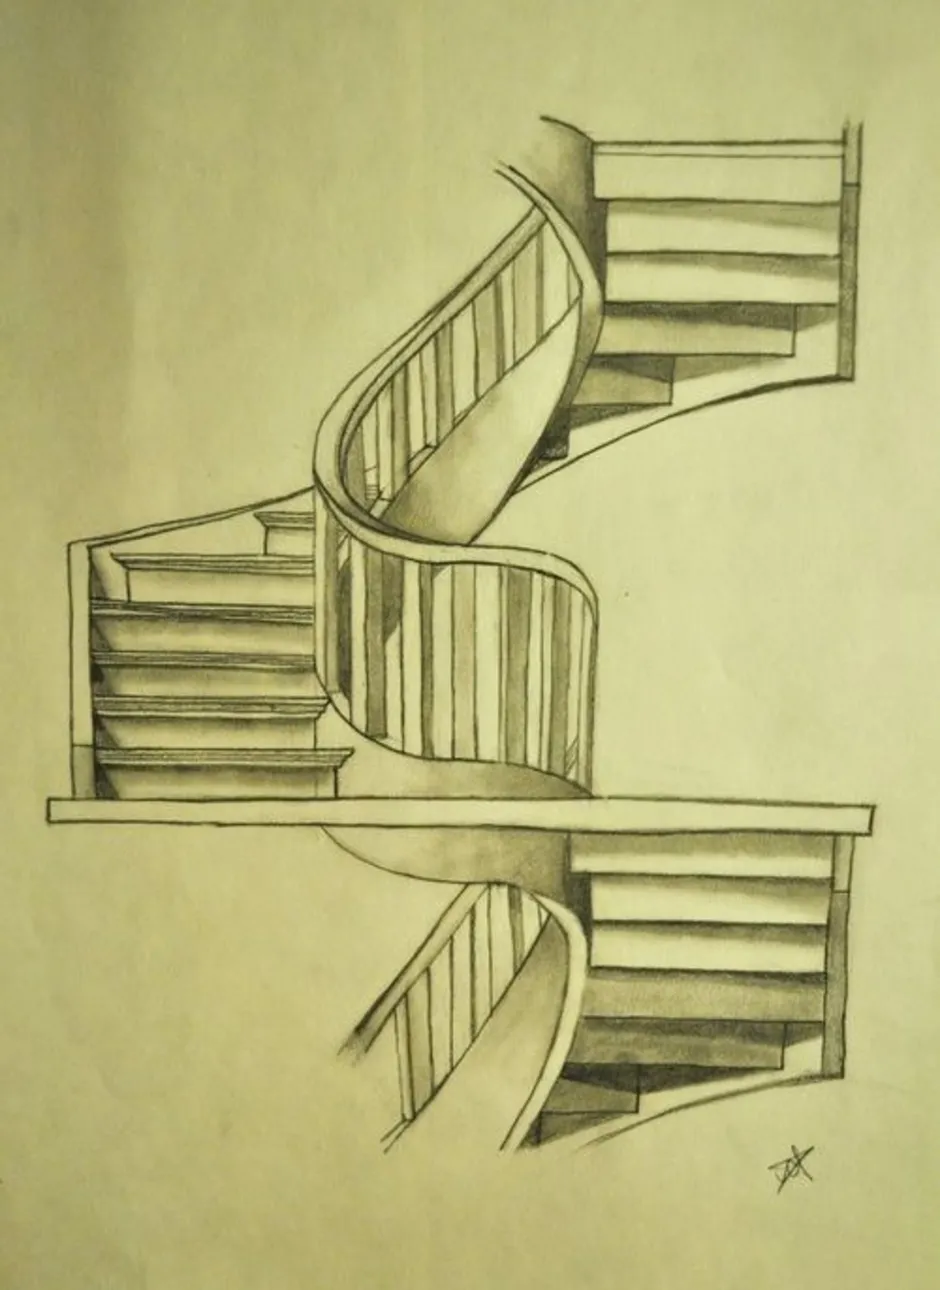 Референс лестница. Наброски лестниц. Эскиз лестницы. Лестница скетч. Лестница рисовать.